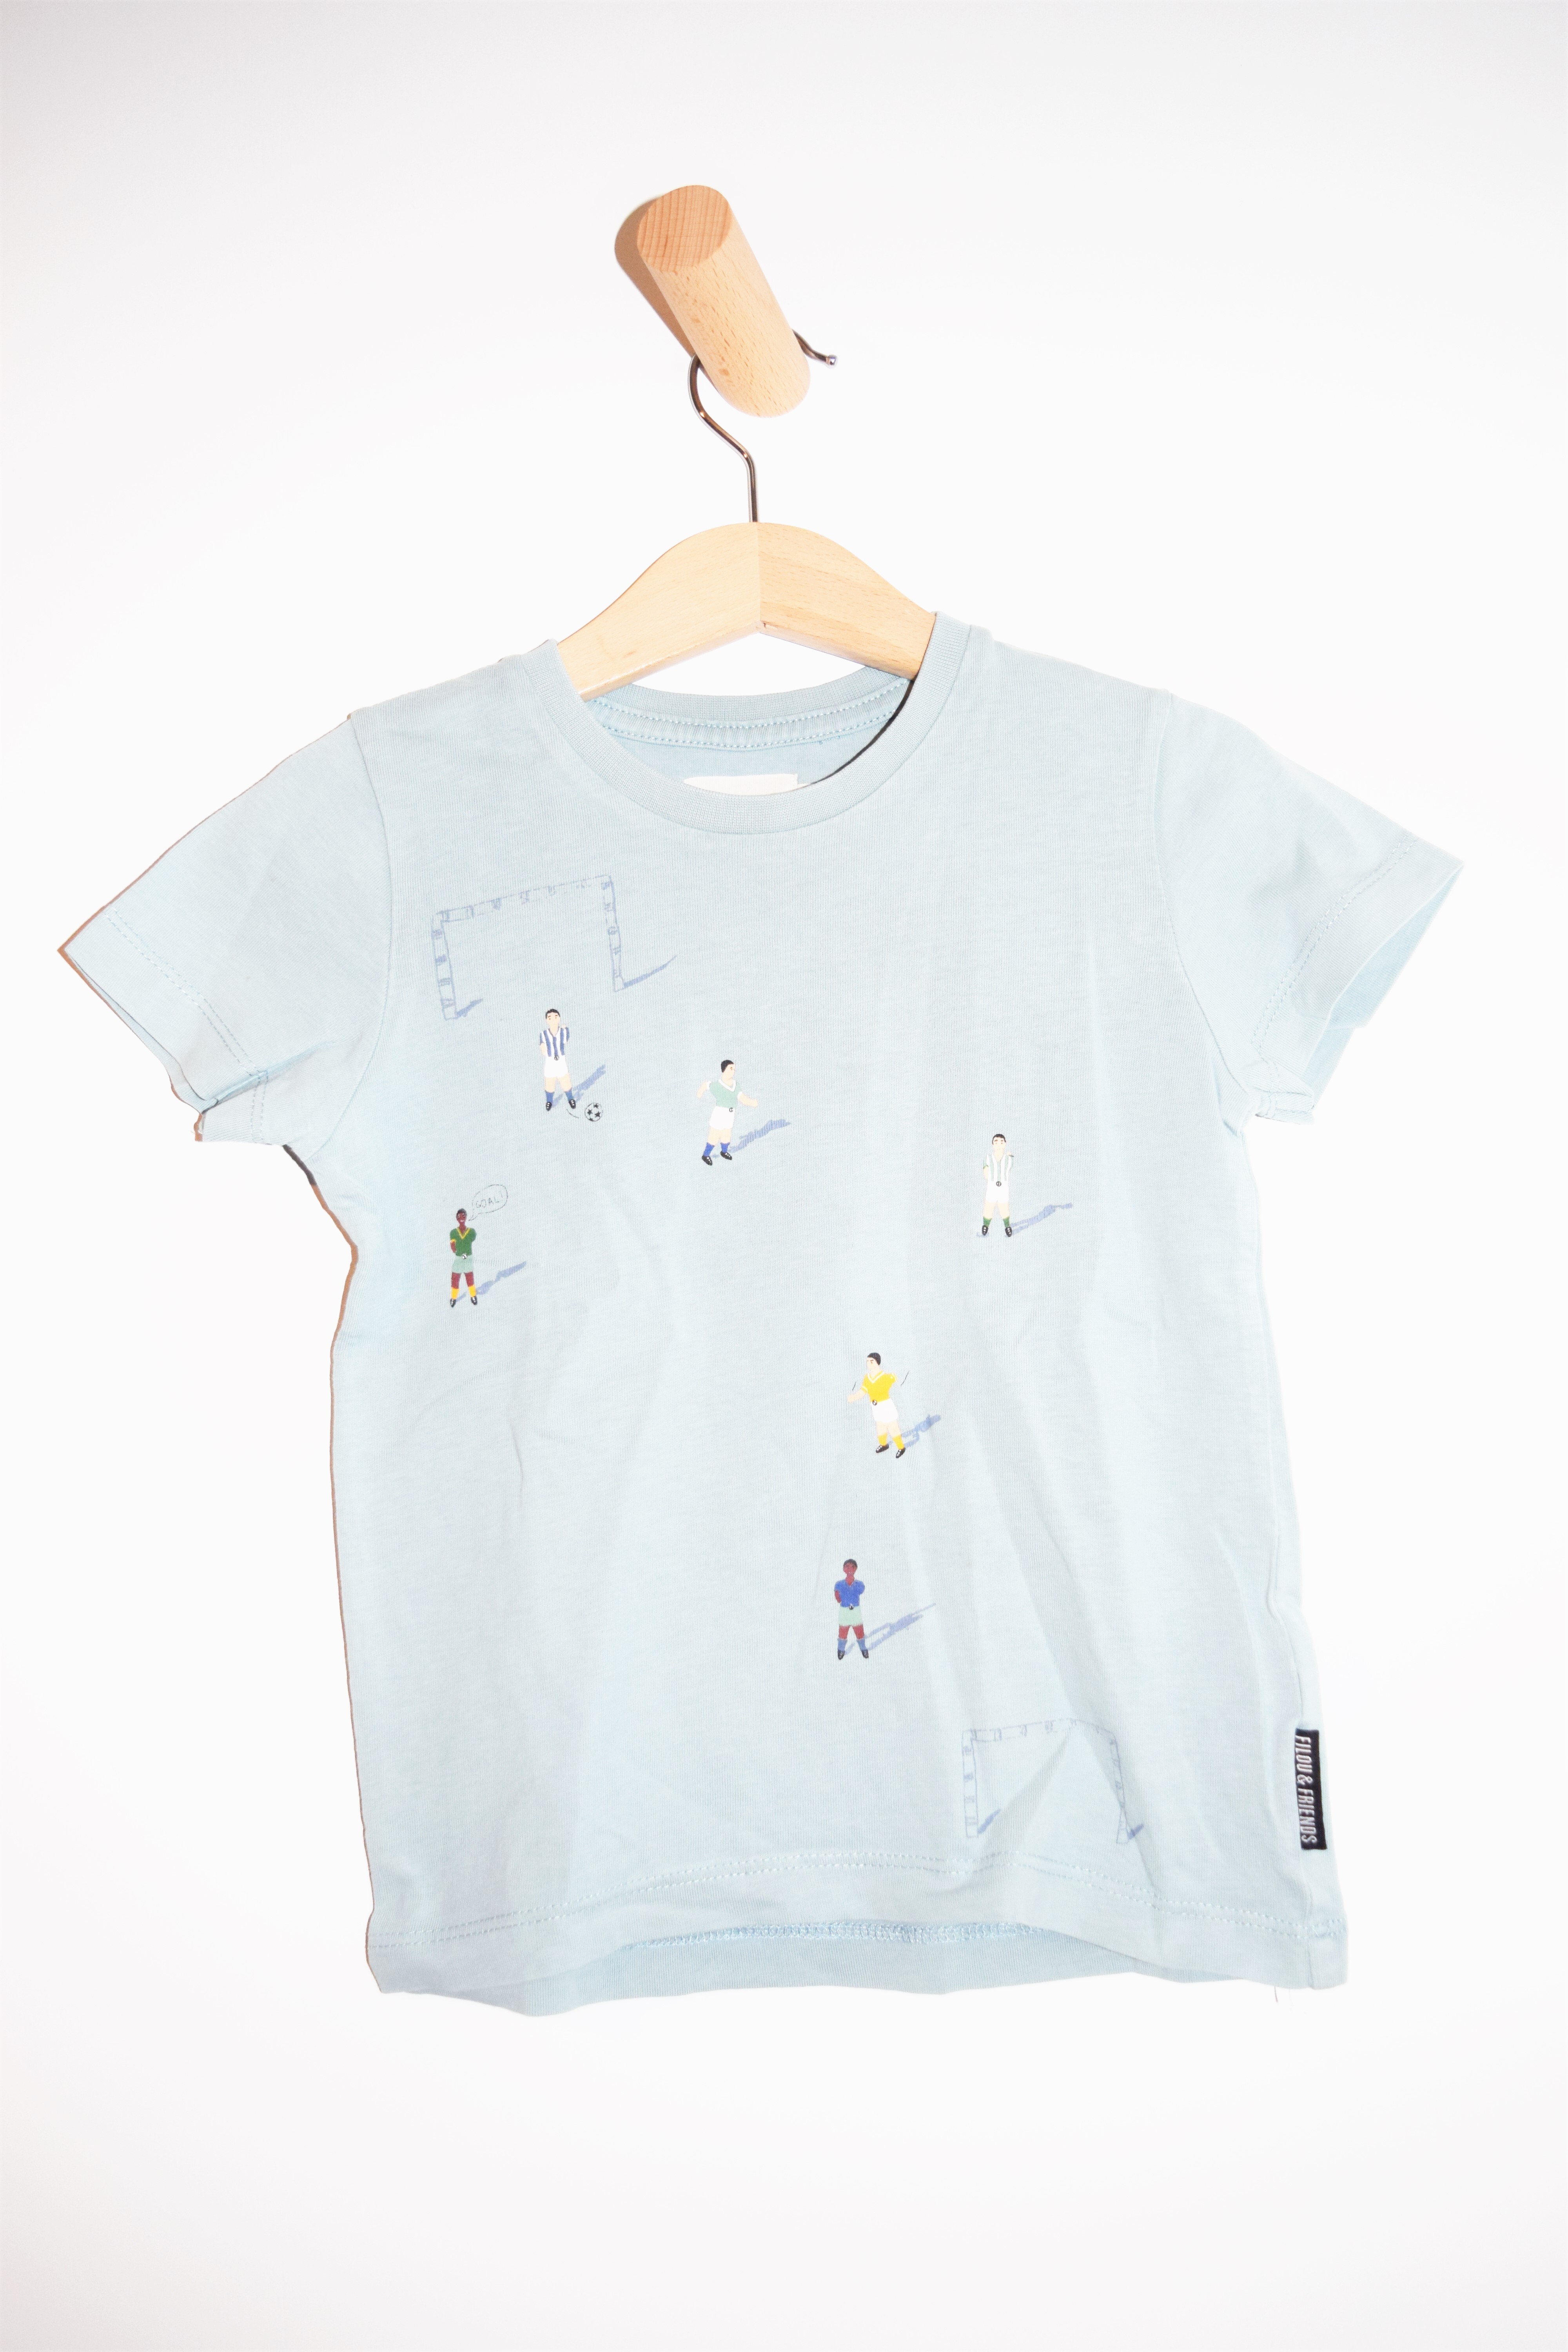 T-shirt, Filou & Friends, 4 jaar 